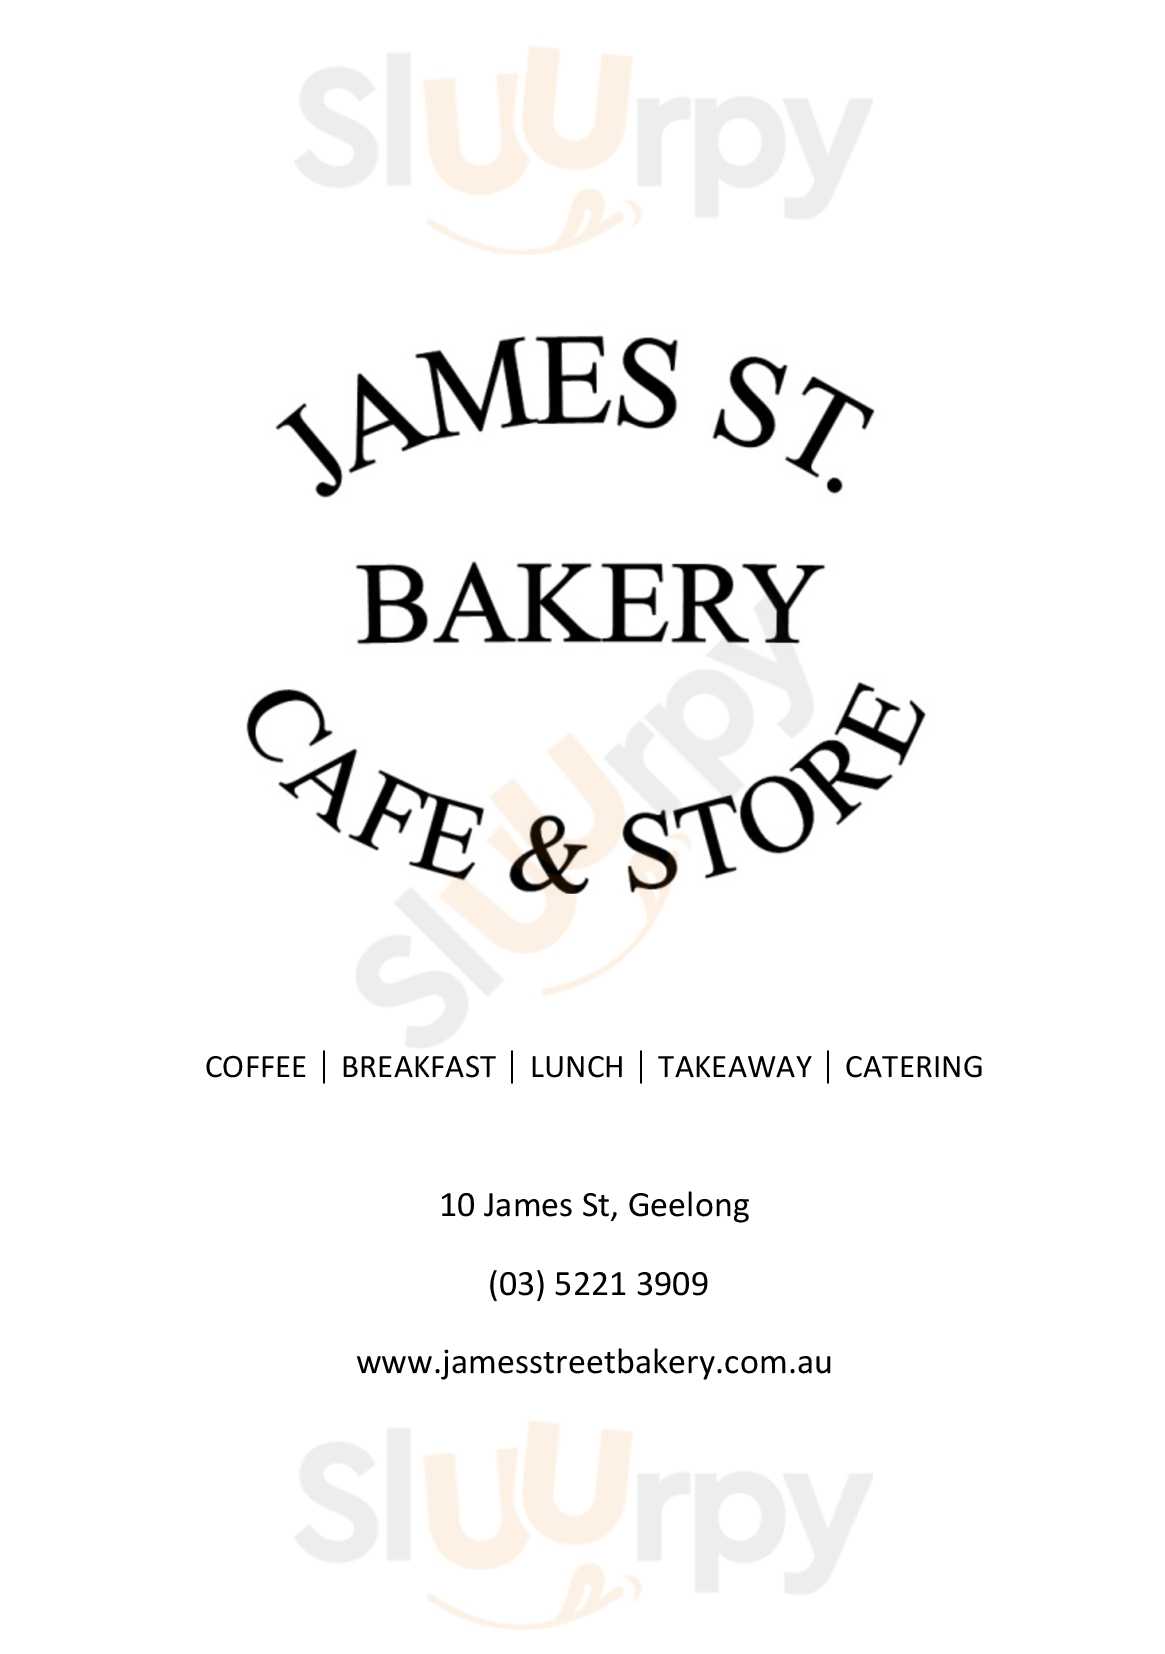 James Street Bakery And Cafe Geelong Menu - 1